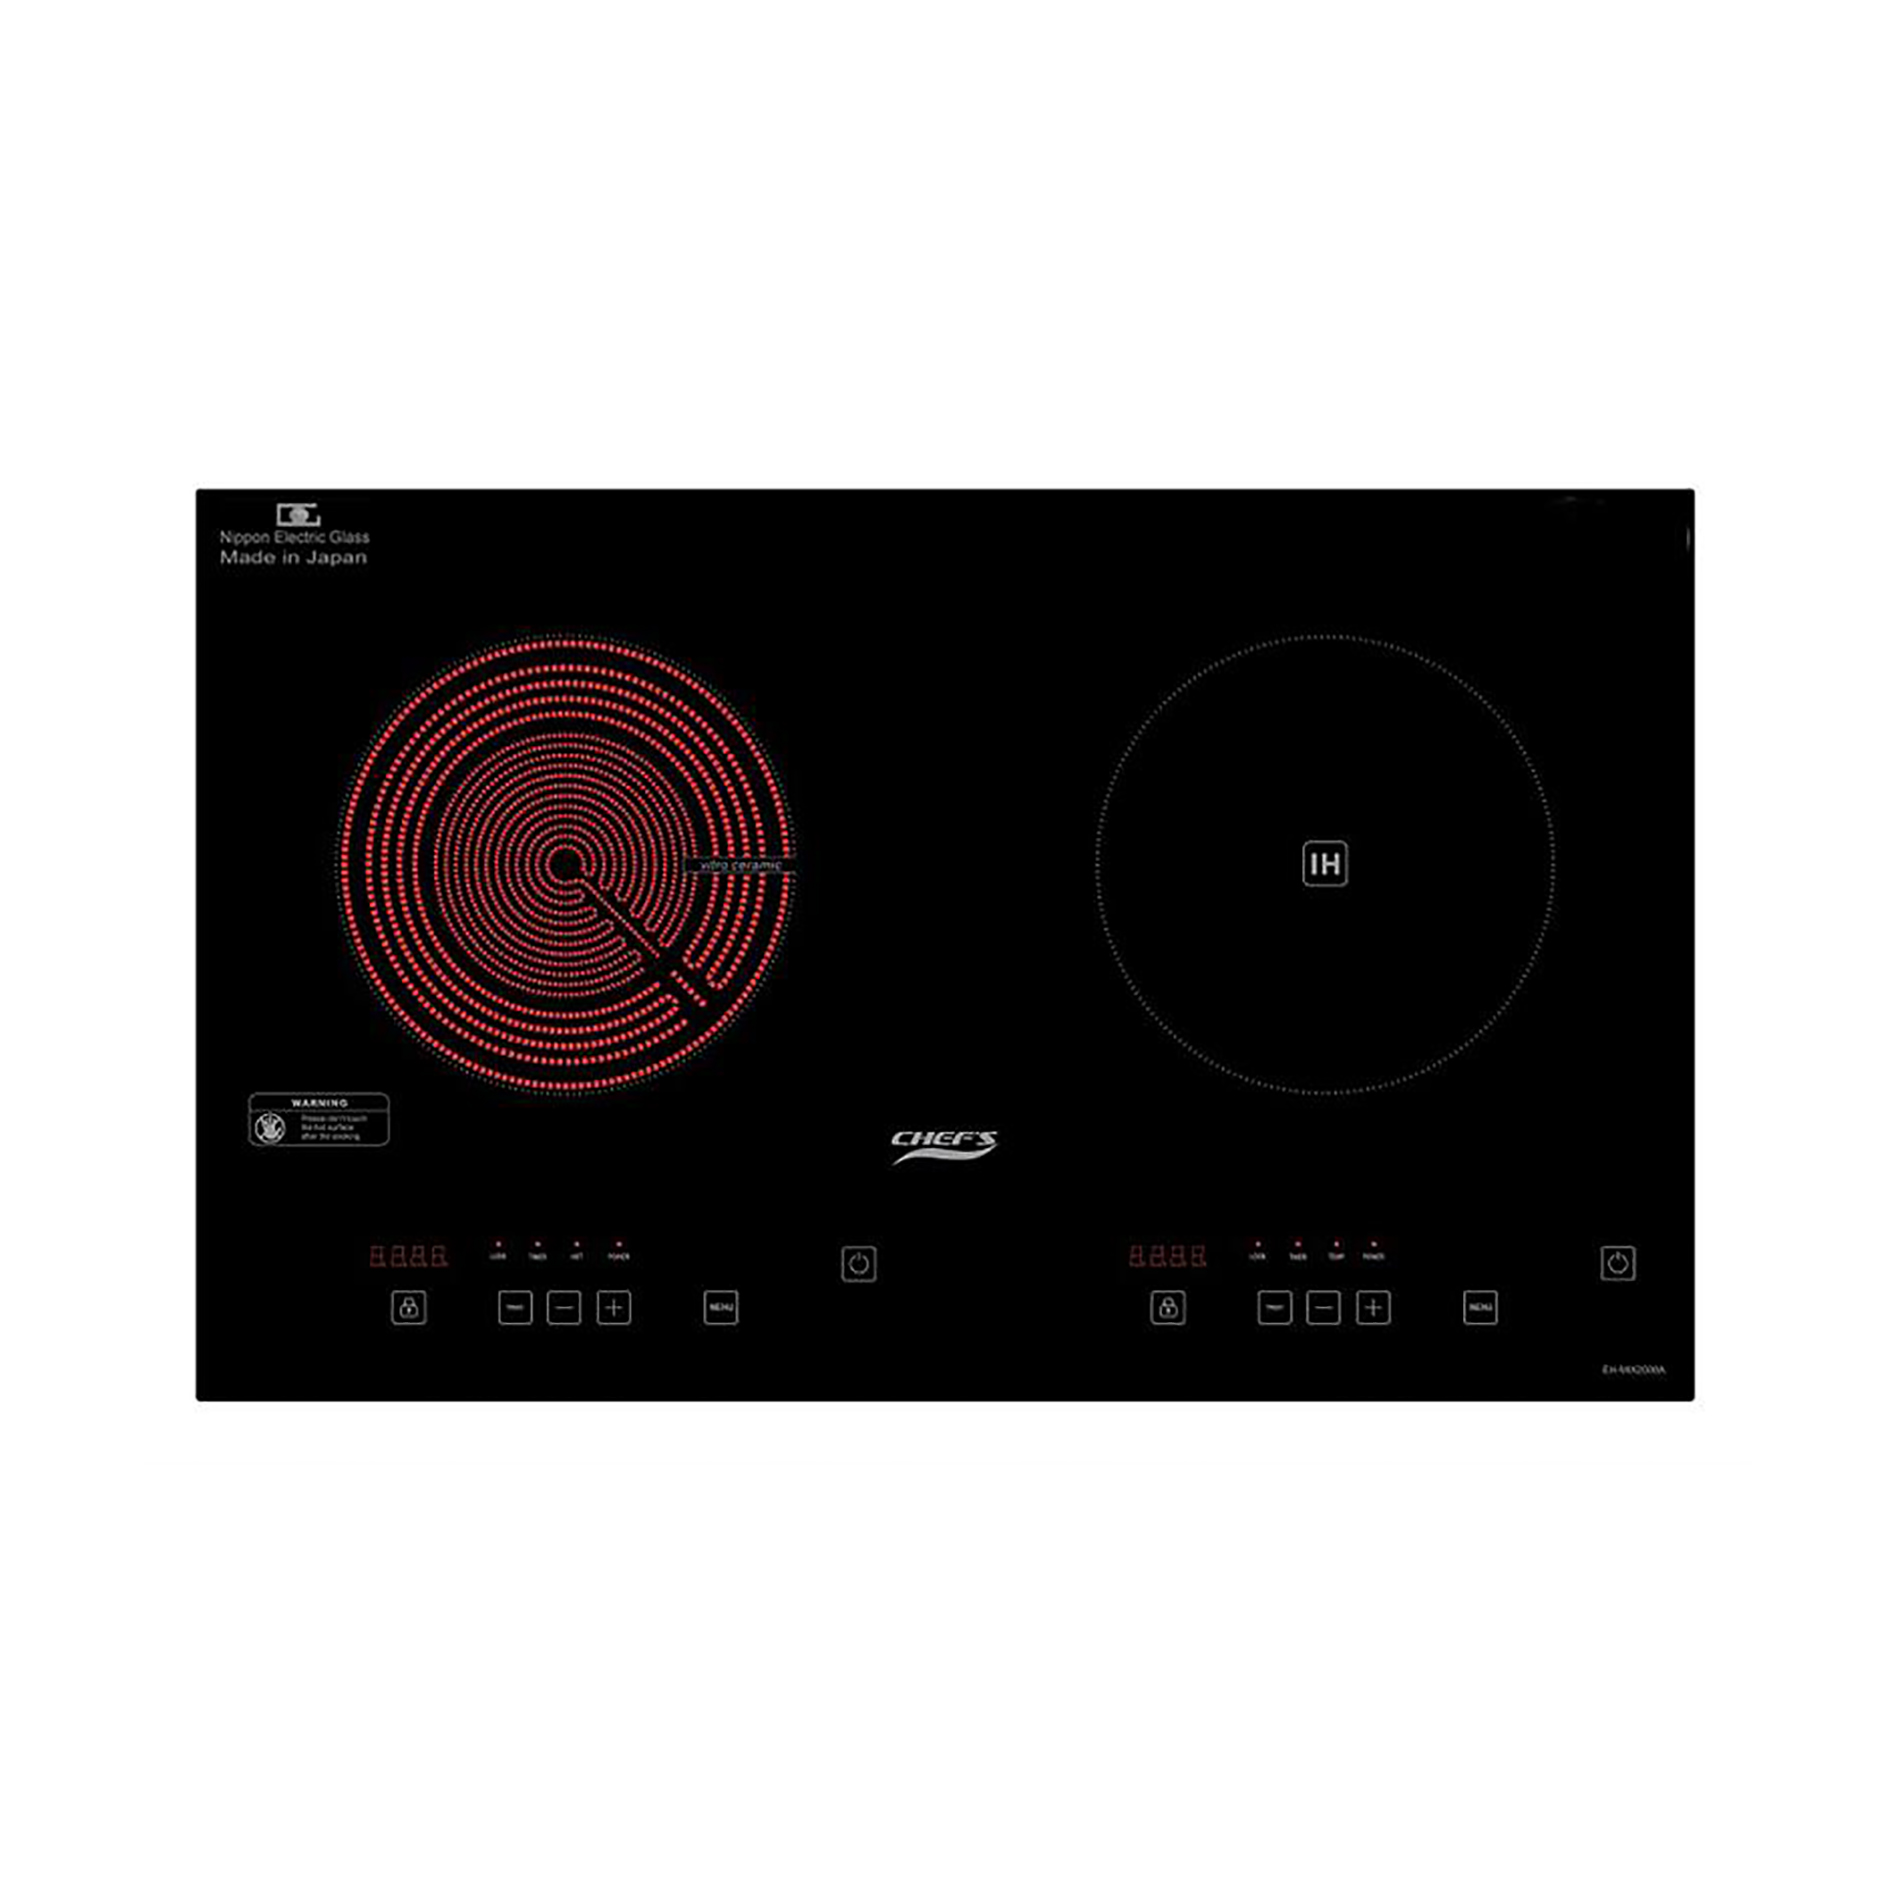 Bếp Điện Từ Đôi CHEF'S EH-MIX2000A - 1 điện + 1 từ, Mặt kính EuroKera chịu nhiệt cao, Cảm biến an toàn